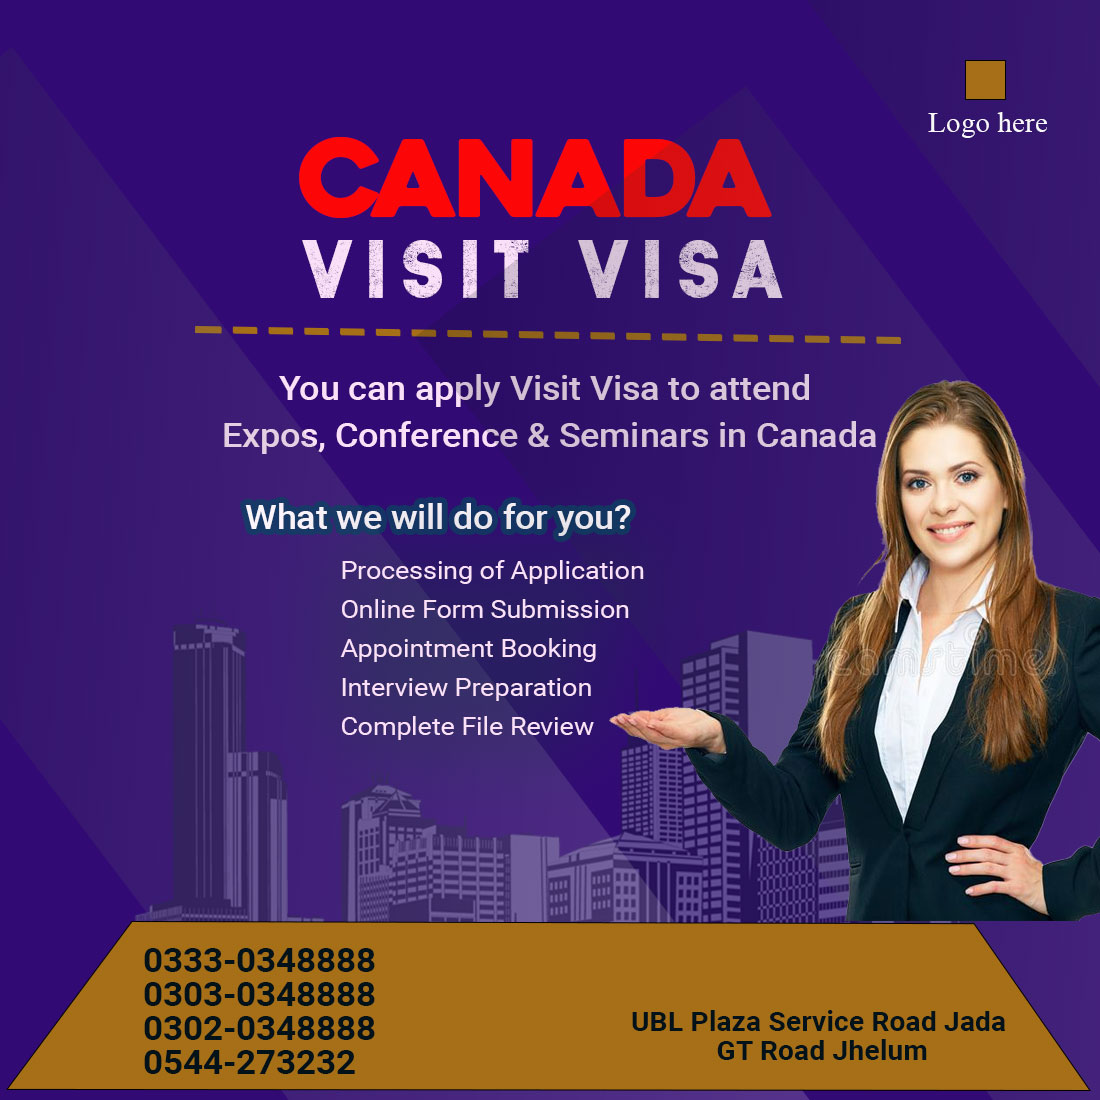 CANADA VISIT VISA| cool post design preview image.